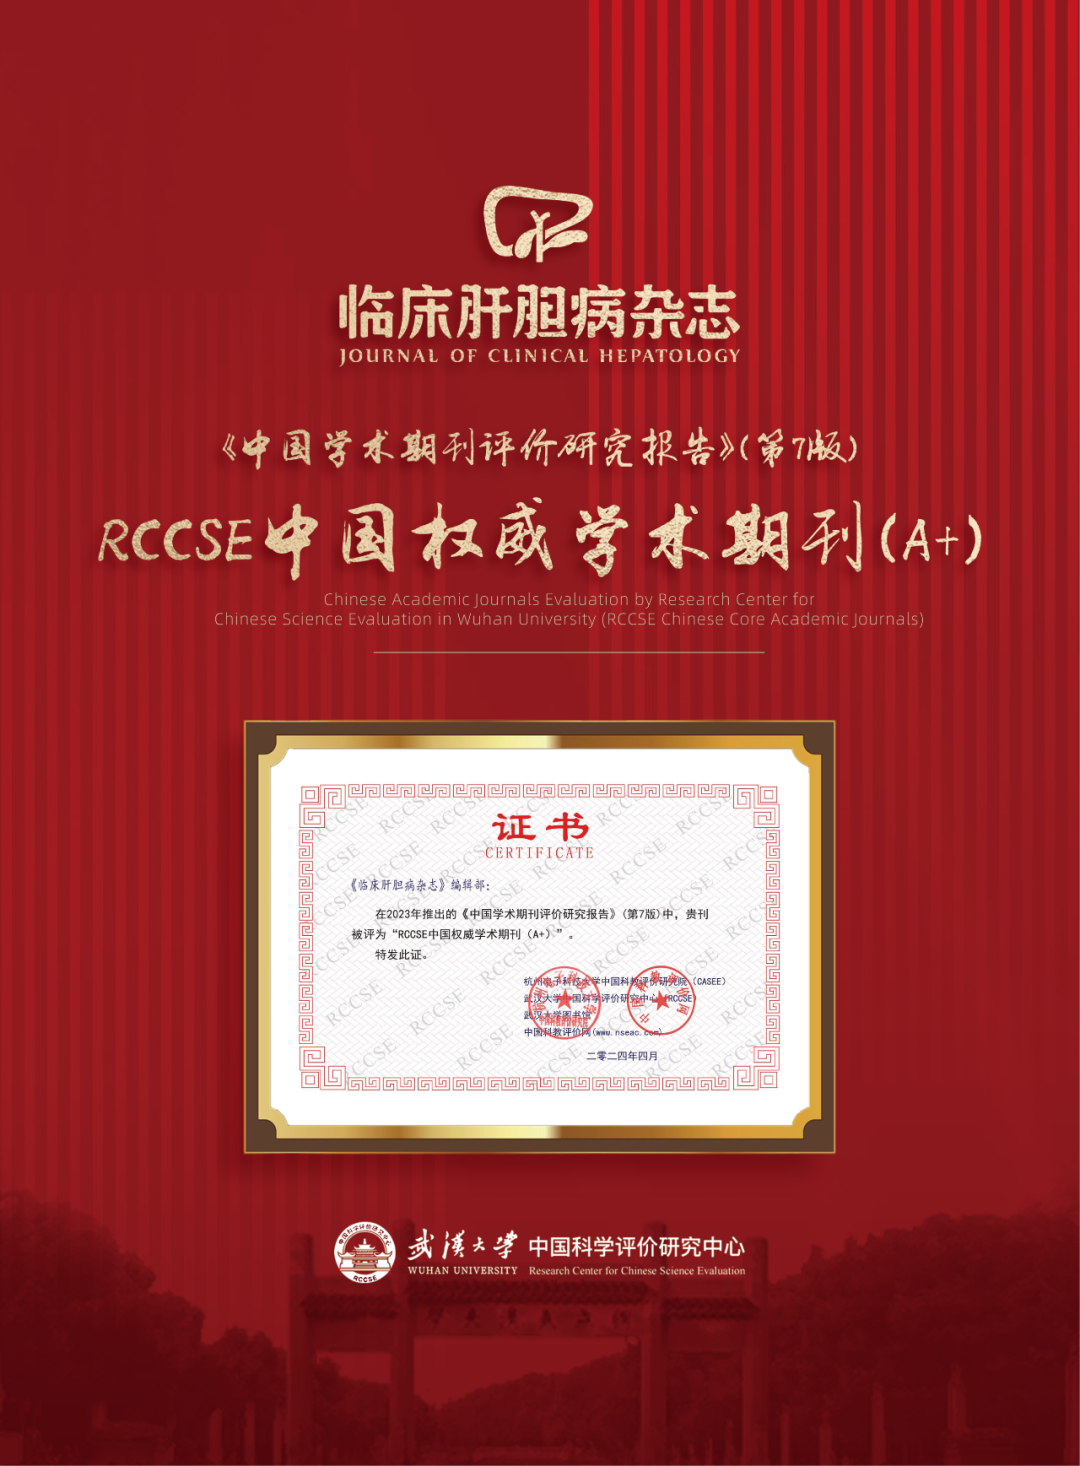 《临床肝胆病杂志》获评“RCCSE<font color="red">中国</font>权威学术<font color="red">期刊</font>（A+）”